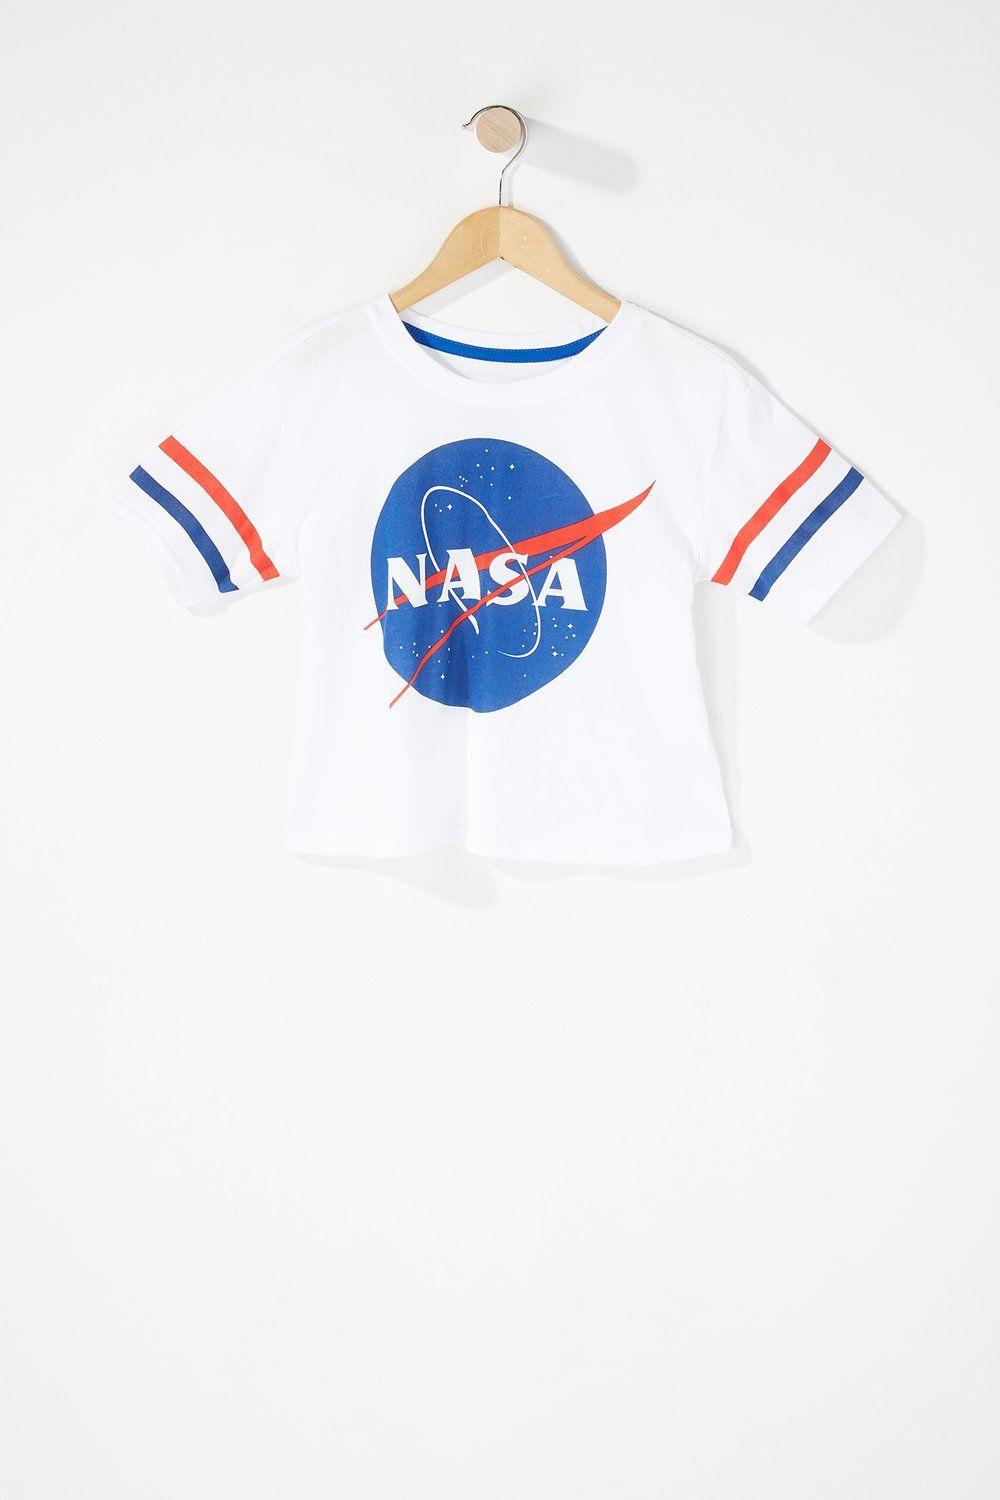 NASA Girl Logo - Girls Fashion Nasa Graphic T Shirt